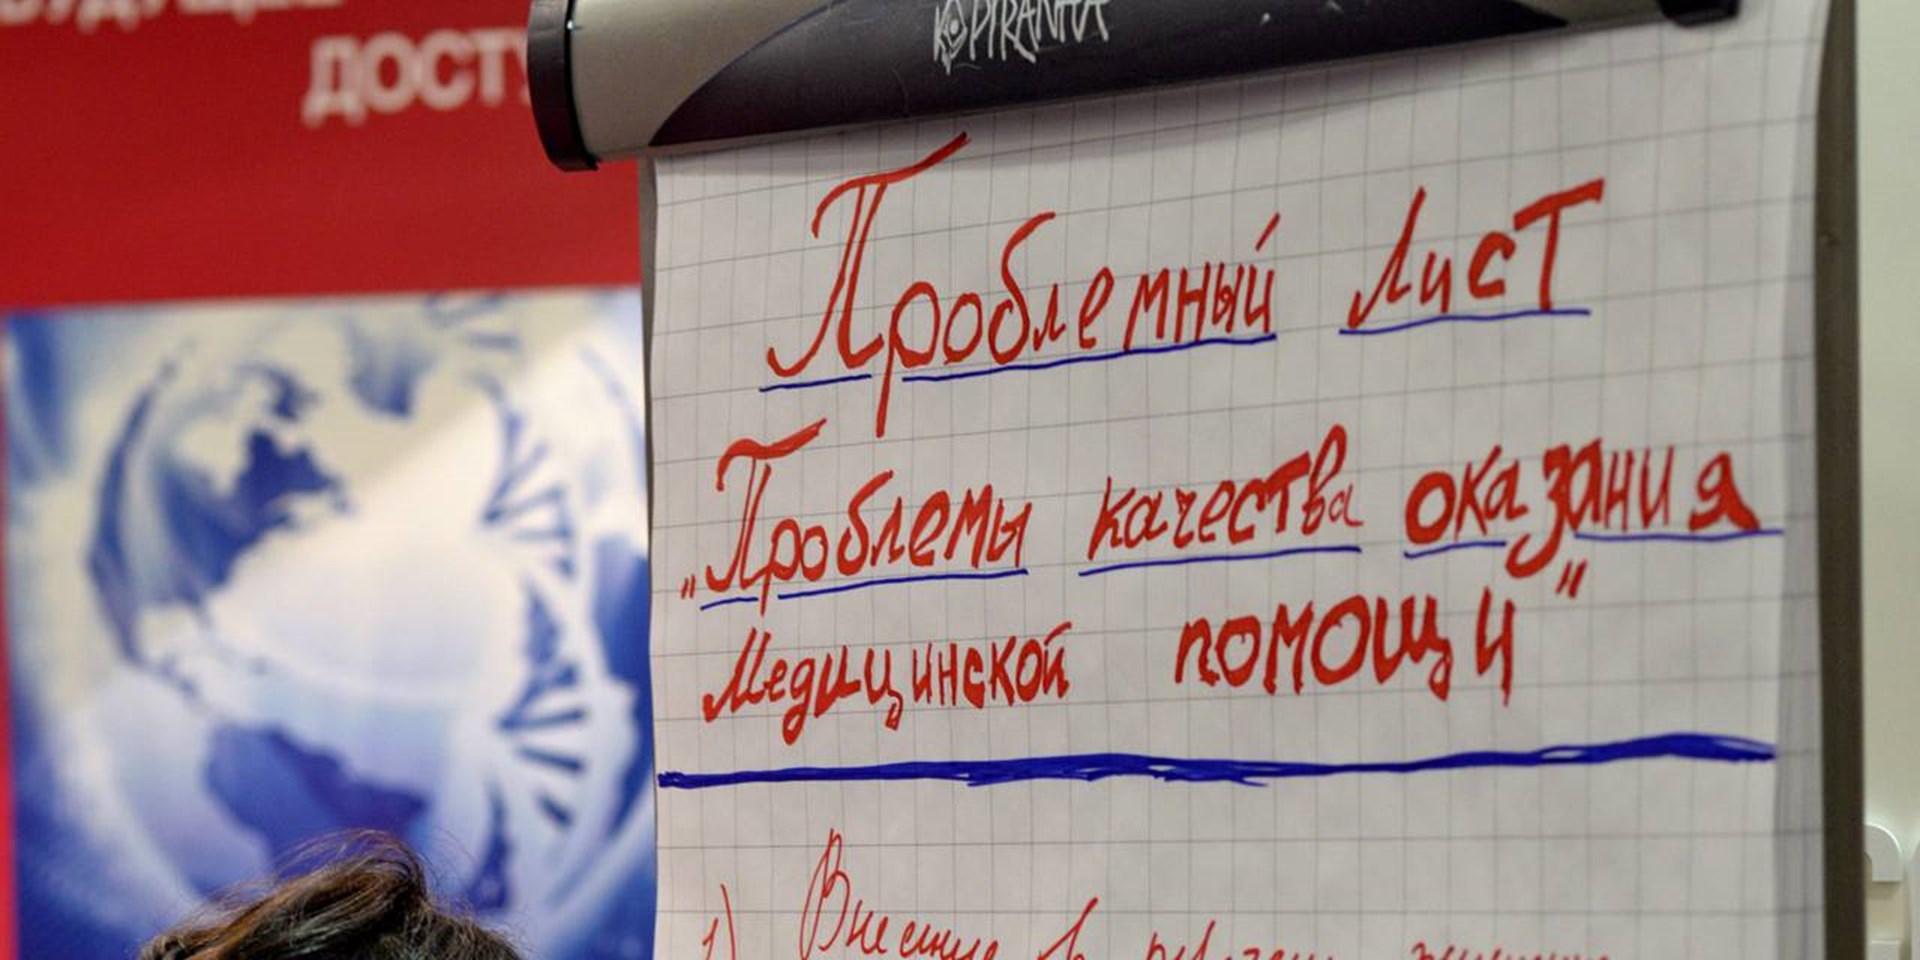 26.11.2014 Москва. Резолюция V конгресса пациентов